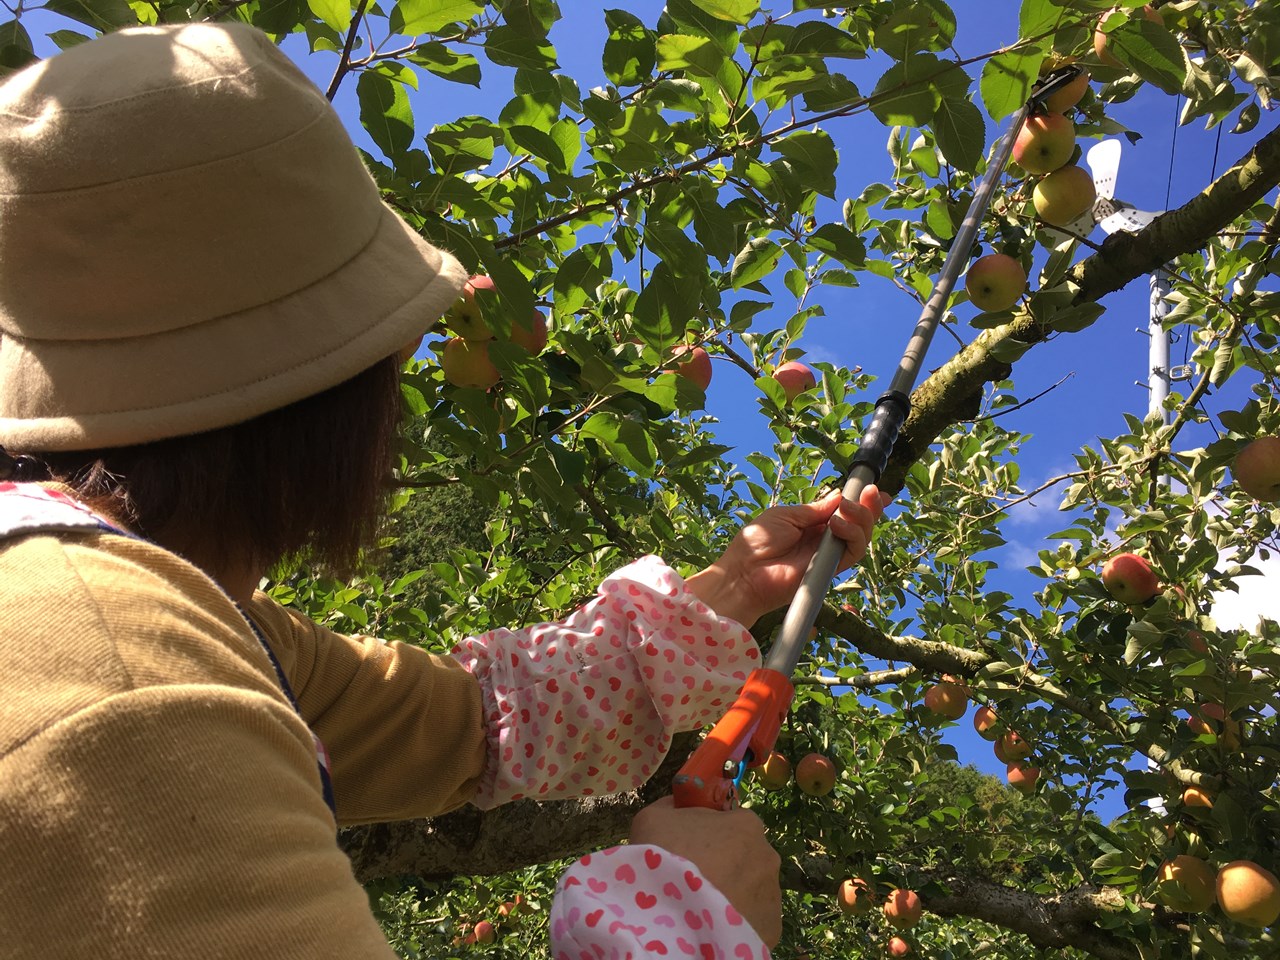 高いところ専用の道具でりんごをもぎ取るりんご園のスタッフ